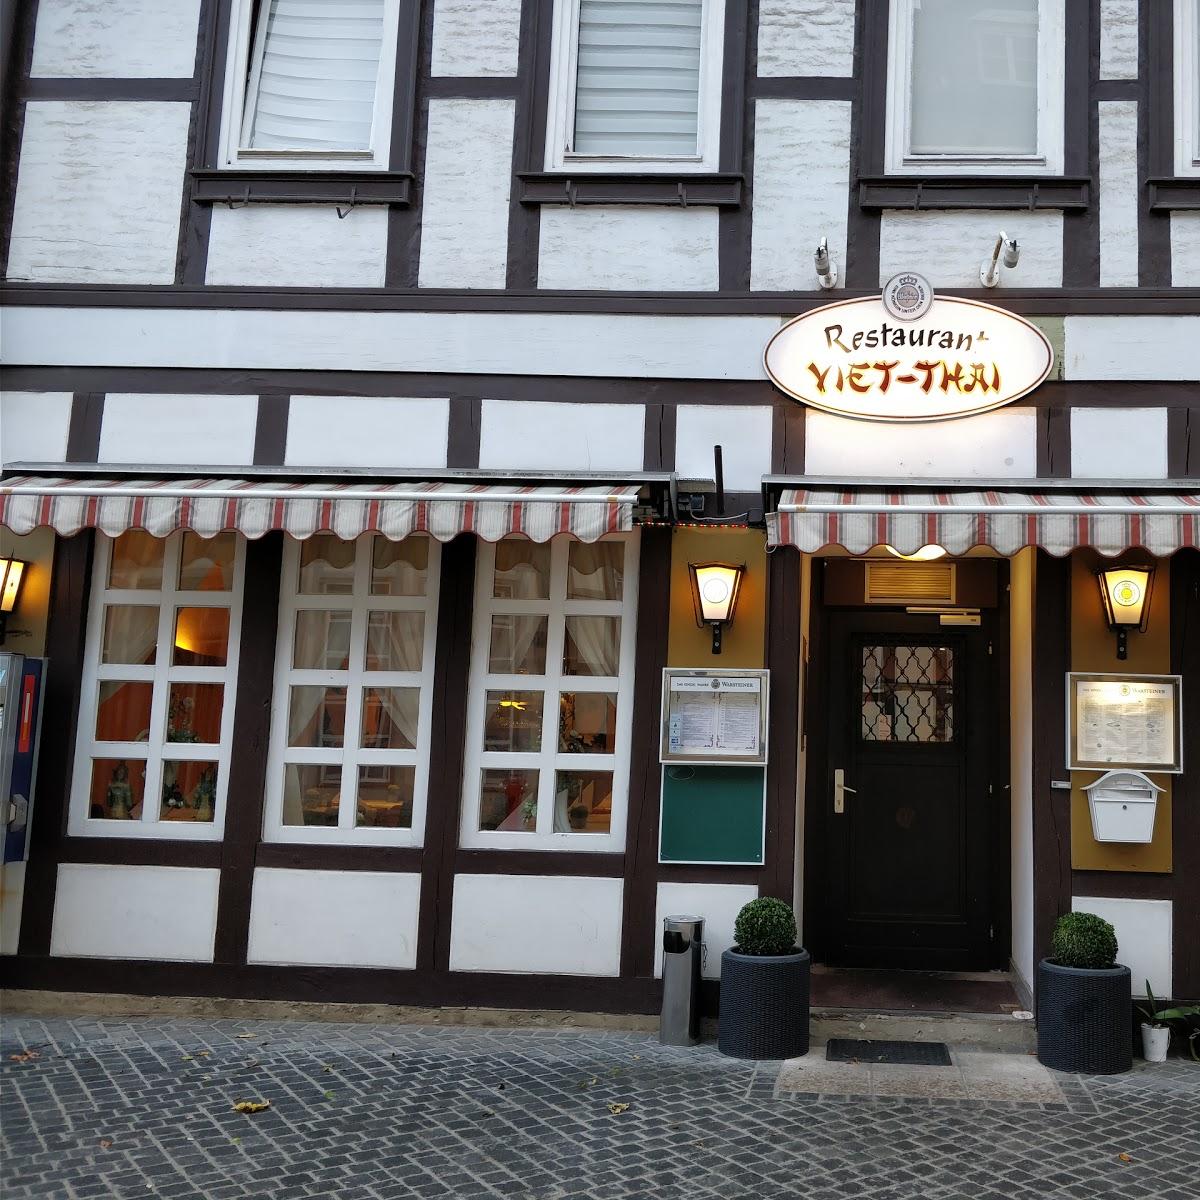 Restaurant "Tires - Feinkost" in  Wolfenbüttel